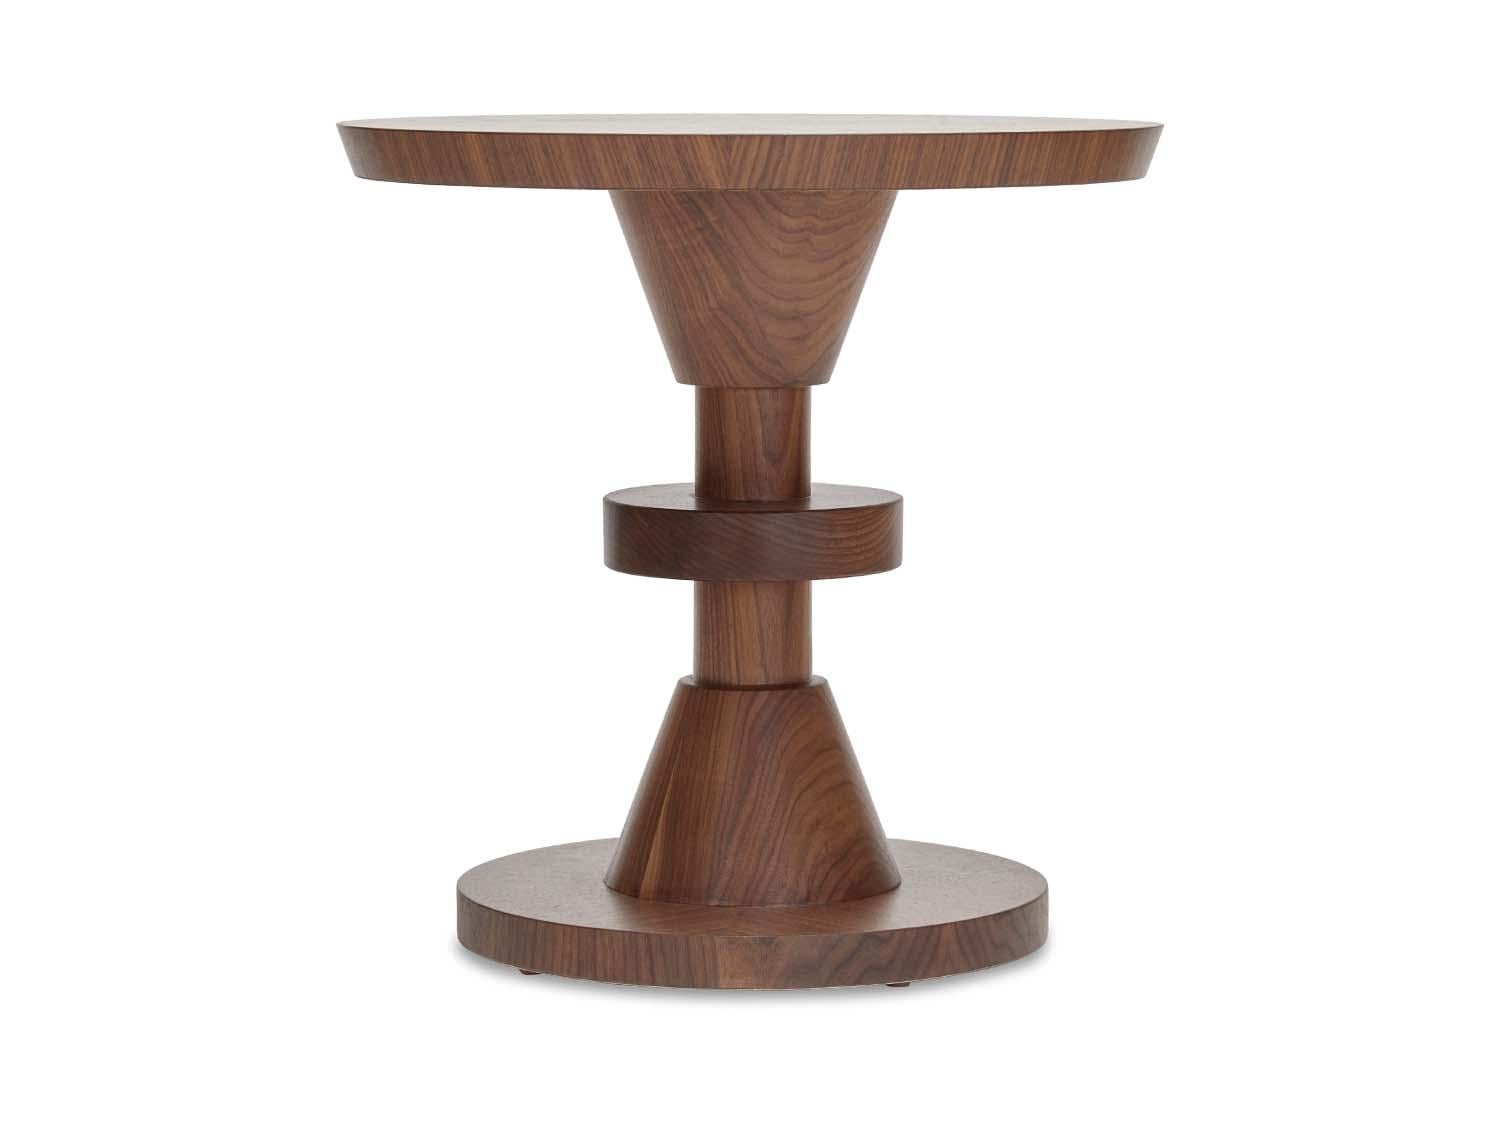 Der Tisch Capitola besteht aus einer Reihe übereinander gestapelter geometrischer Formen mit Details aus Massivholz. Erhältlich in amerikanischem Nussbaum oder Weißeiche. 

Die Lawson-Fenning Collection'S wird in Los Angeles, Kalifornien, entworfen